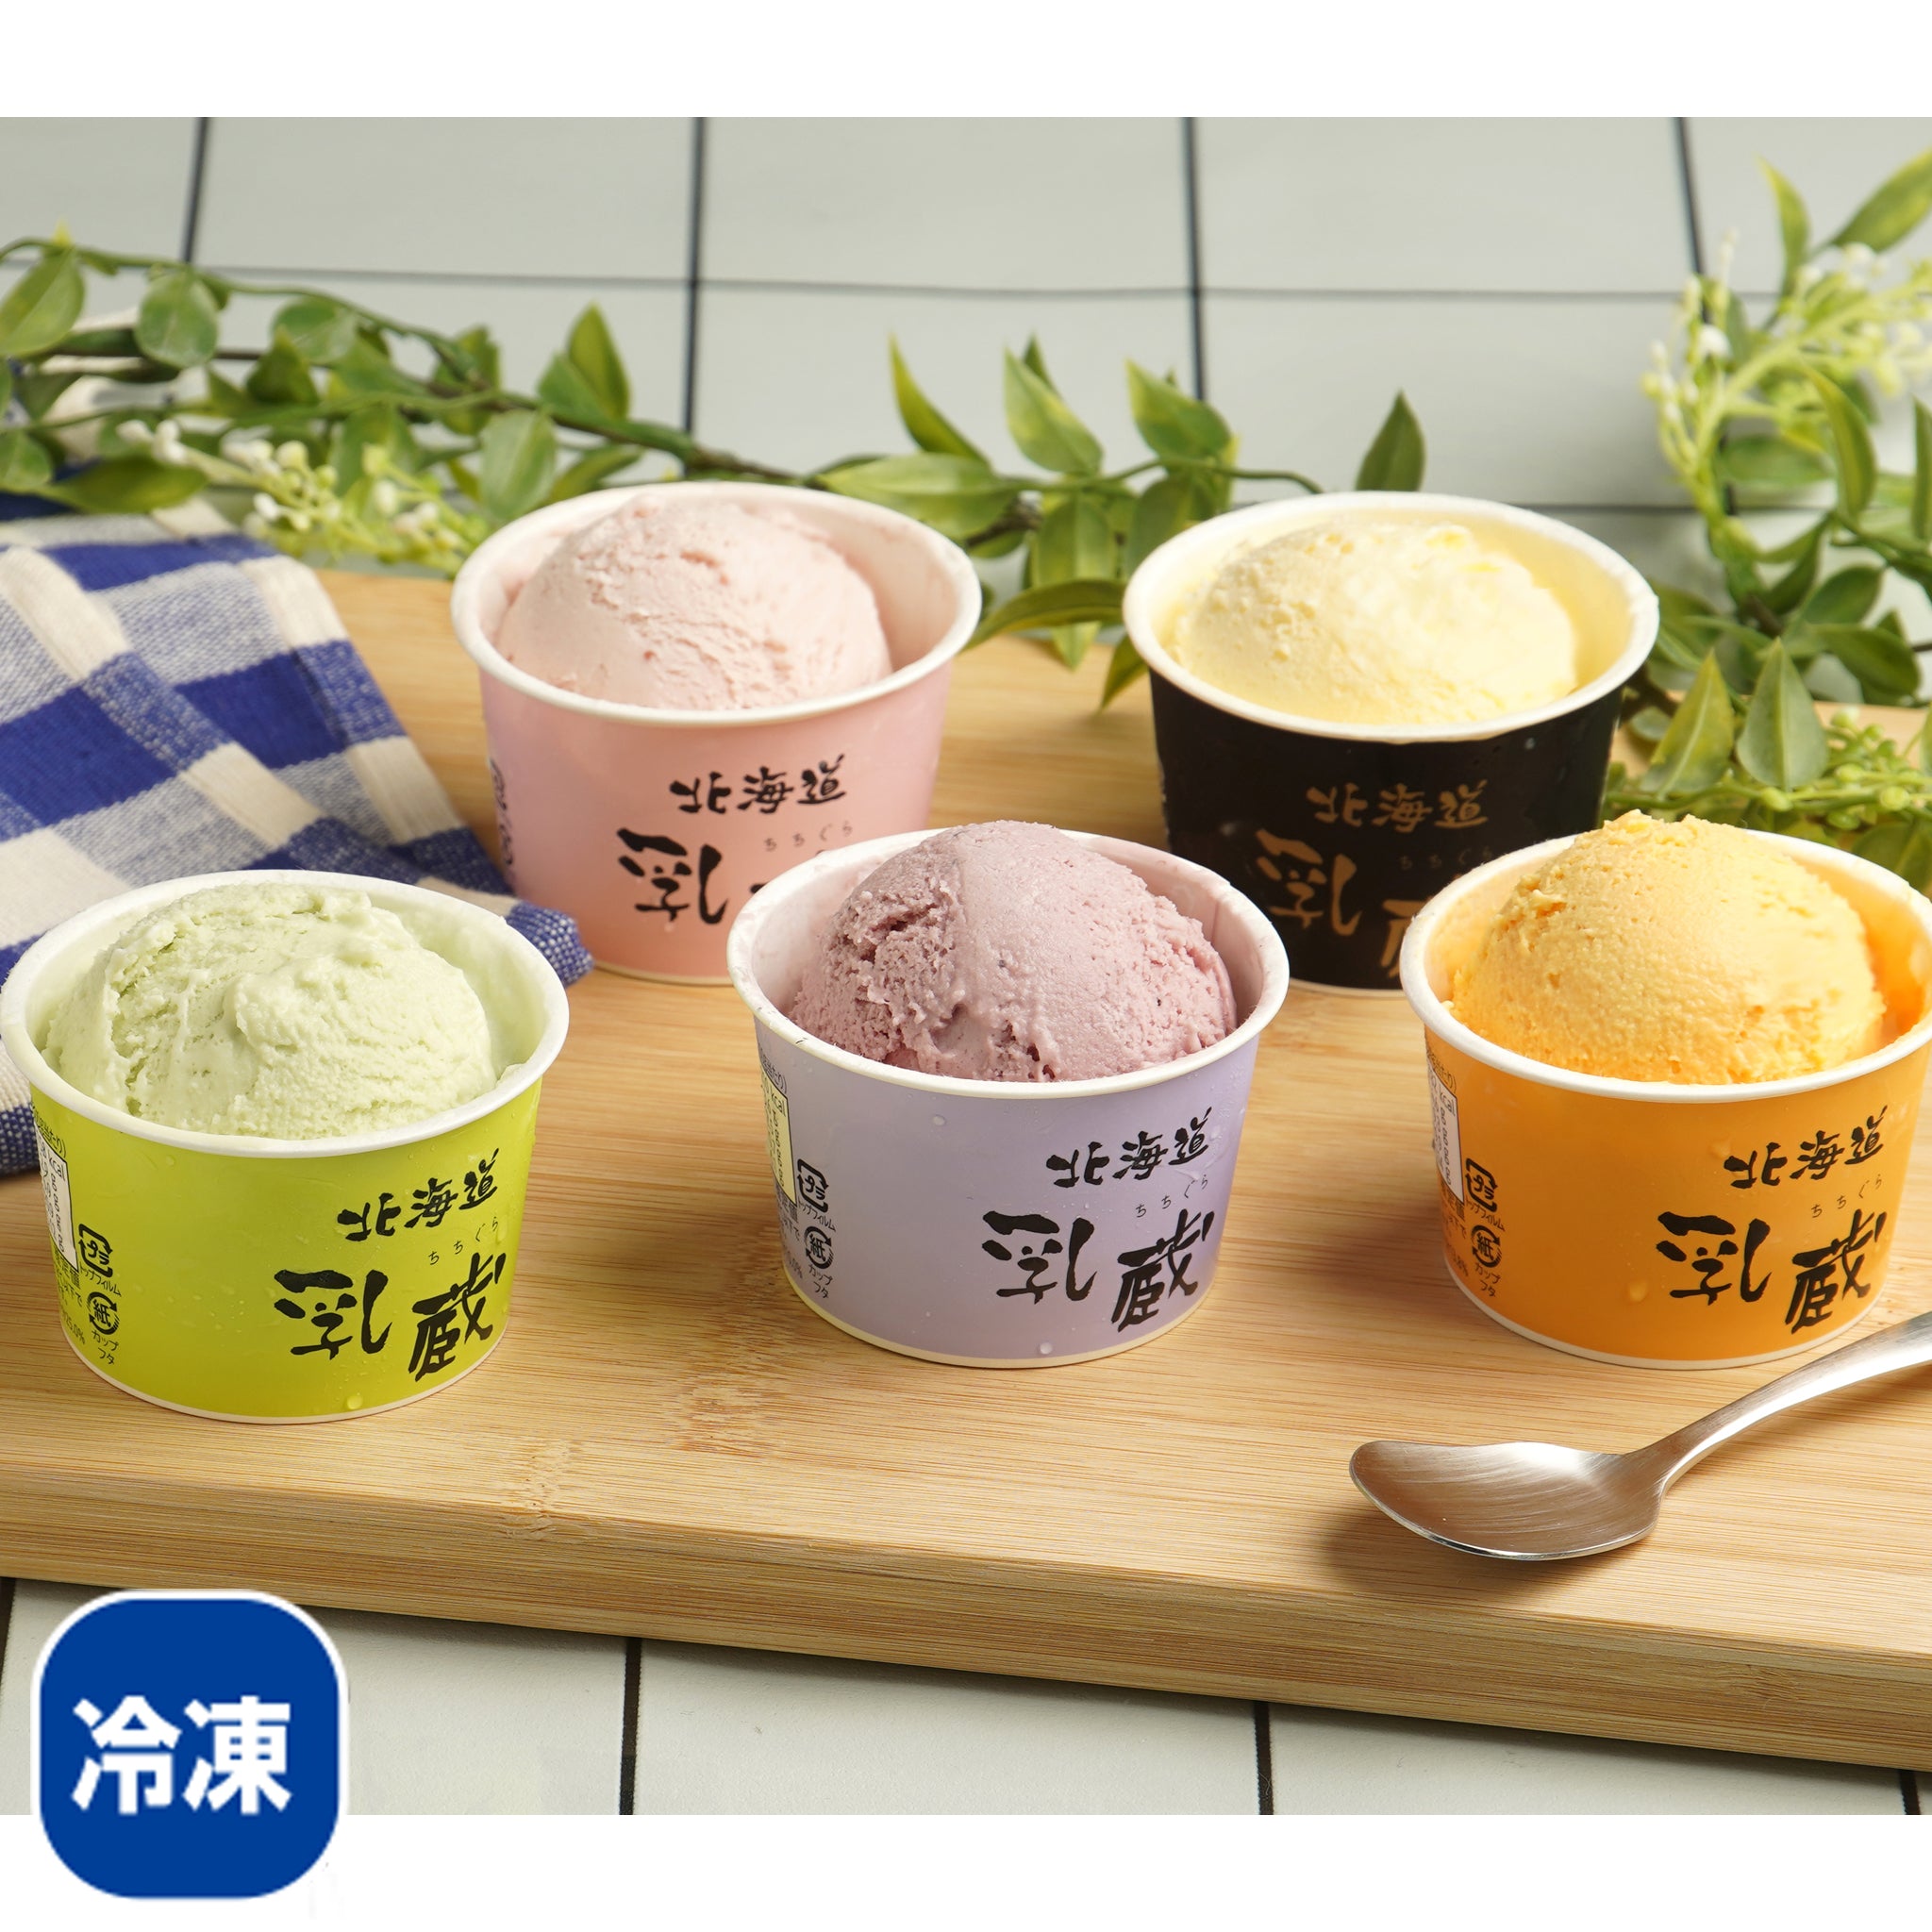 〈産直〉乳蔵 北海道アイスクリーム 5種 12個【冷凍】